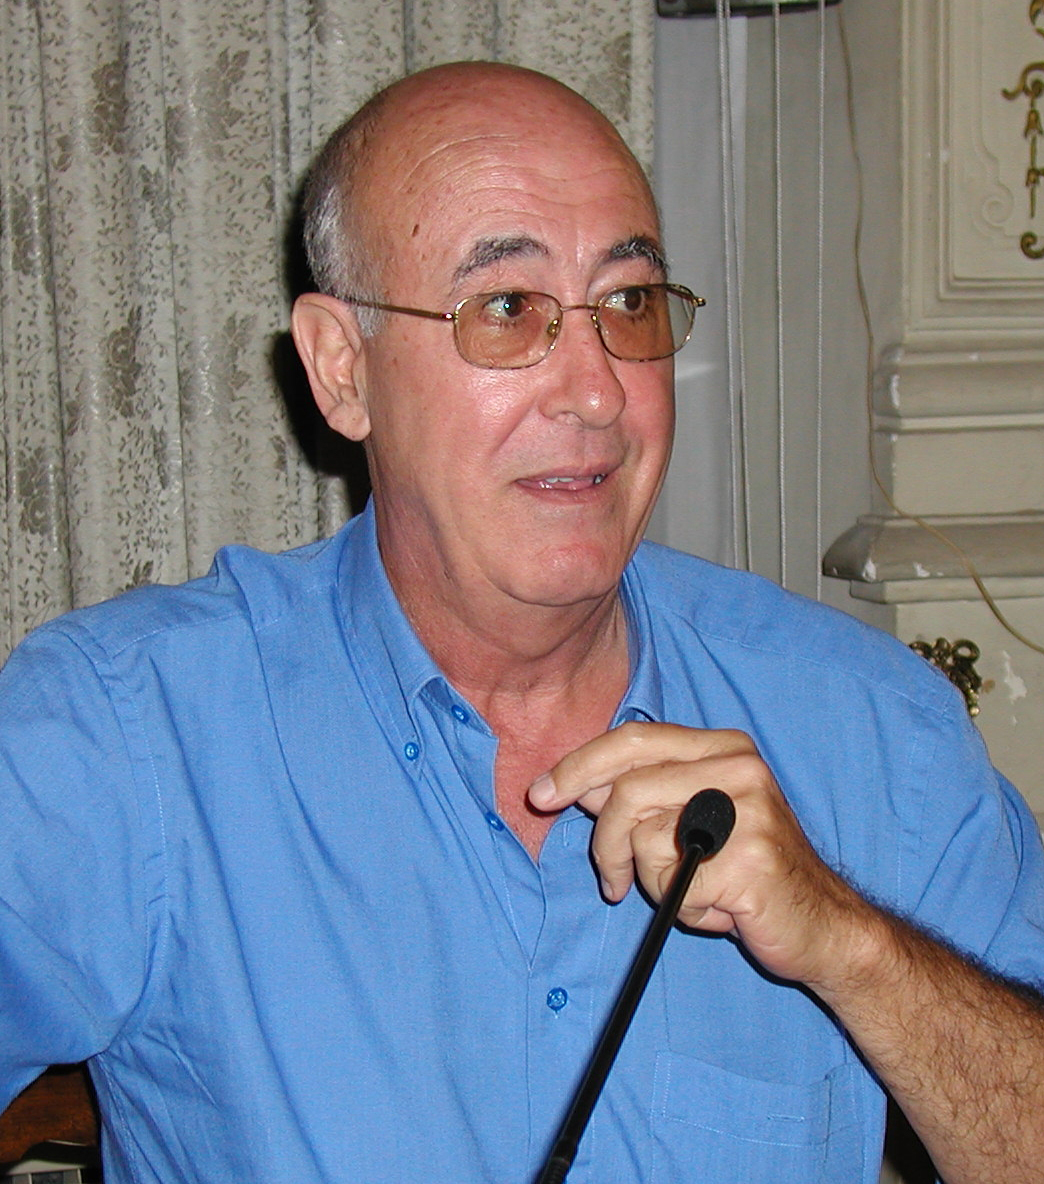 Armando García Carrillo de Albornoz